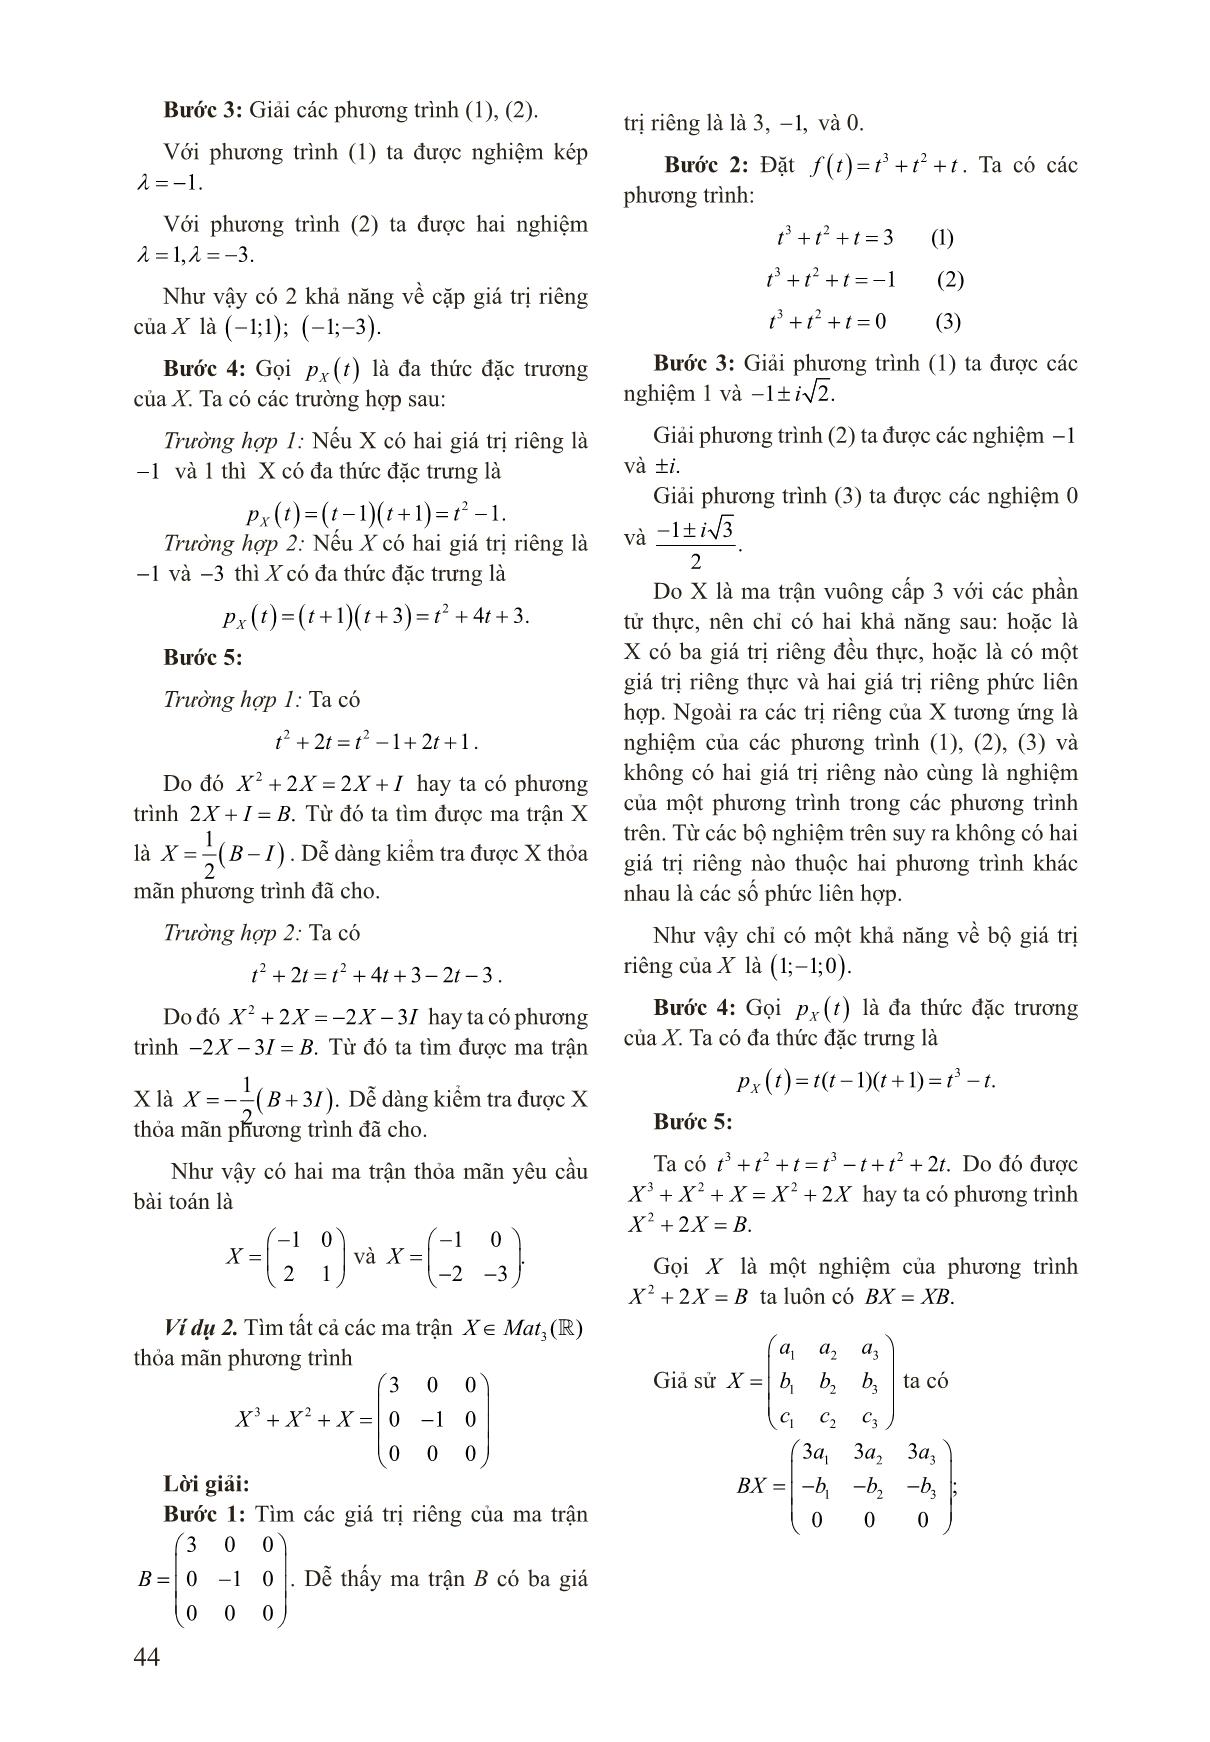 Áp dụng định lý Cayley - Hamilton vào giải phương trình ma trận trang 3